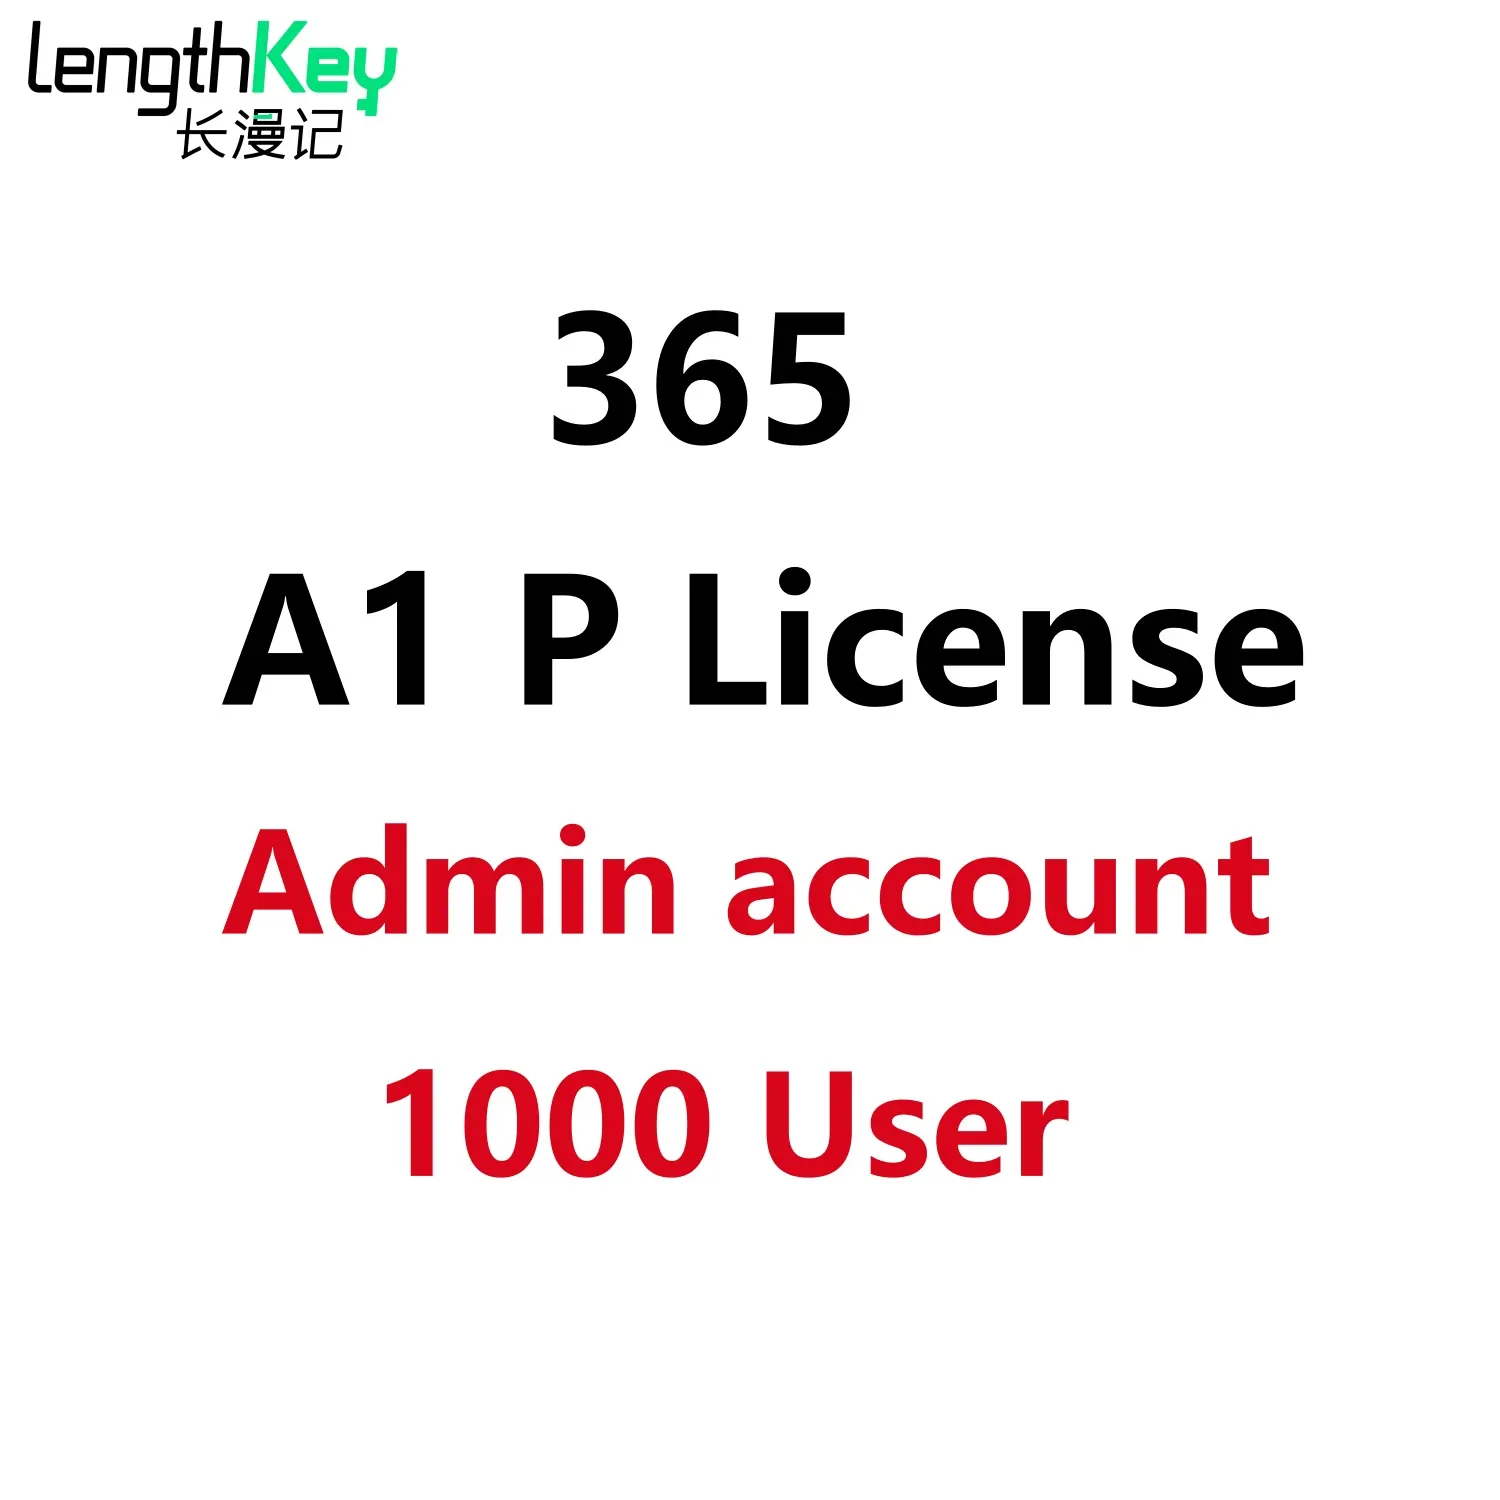 يحتوي الحساب الرسمي 365 A1 Plus للمدير على 1000 مستخدم مستقر مدى الحياة تسجيل يدوي مضمون ما بعد البيع